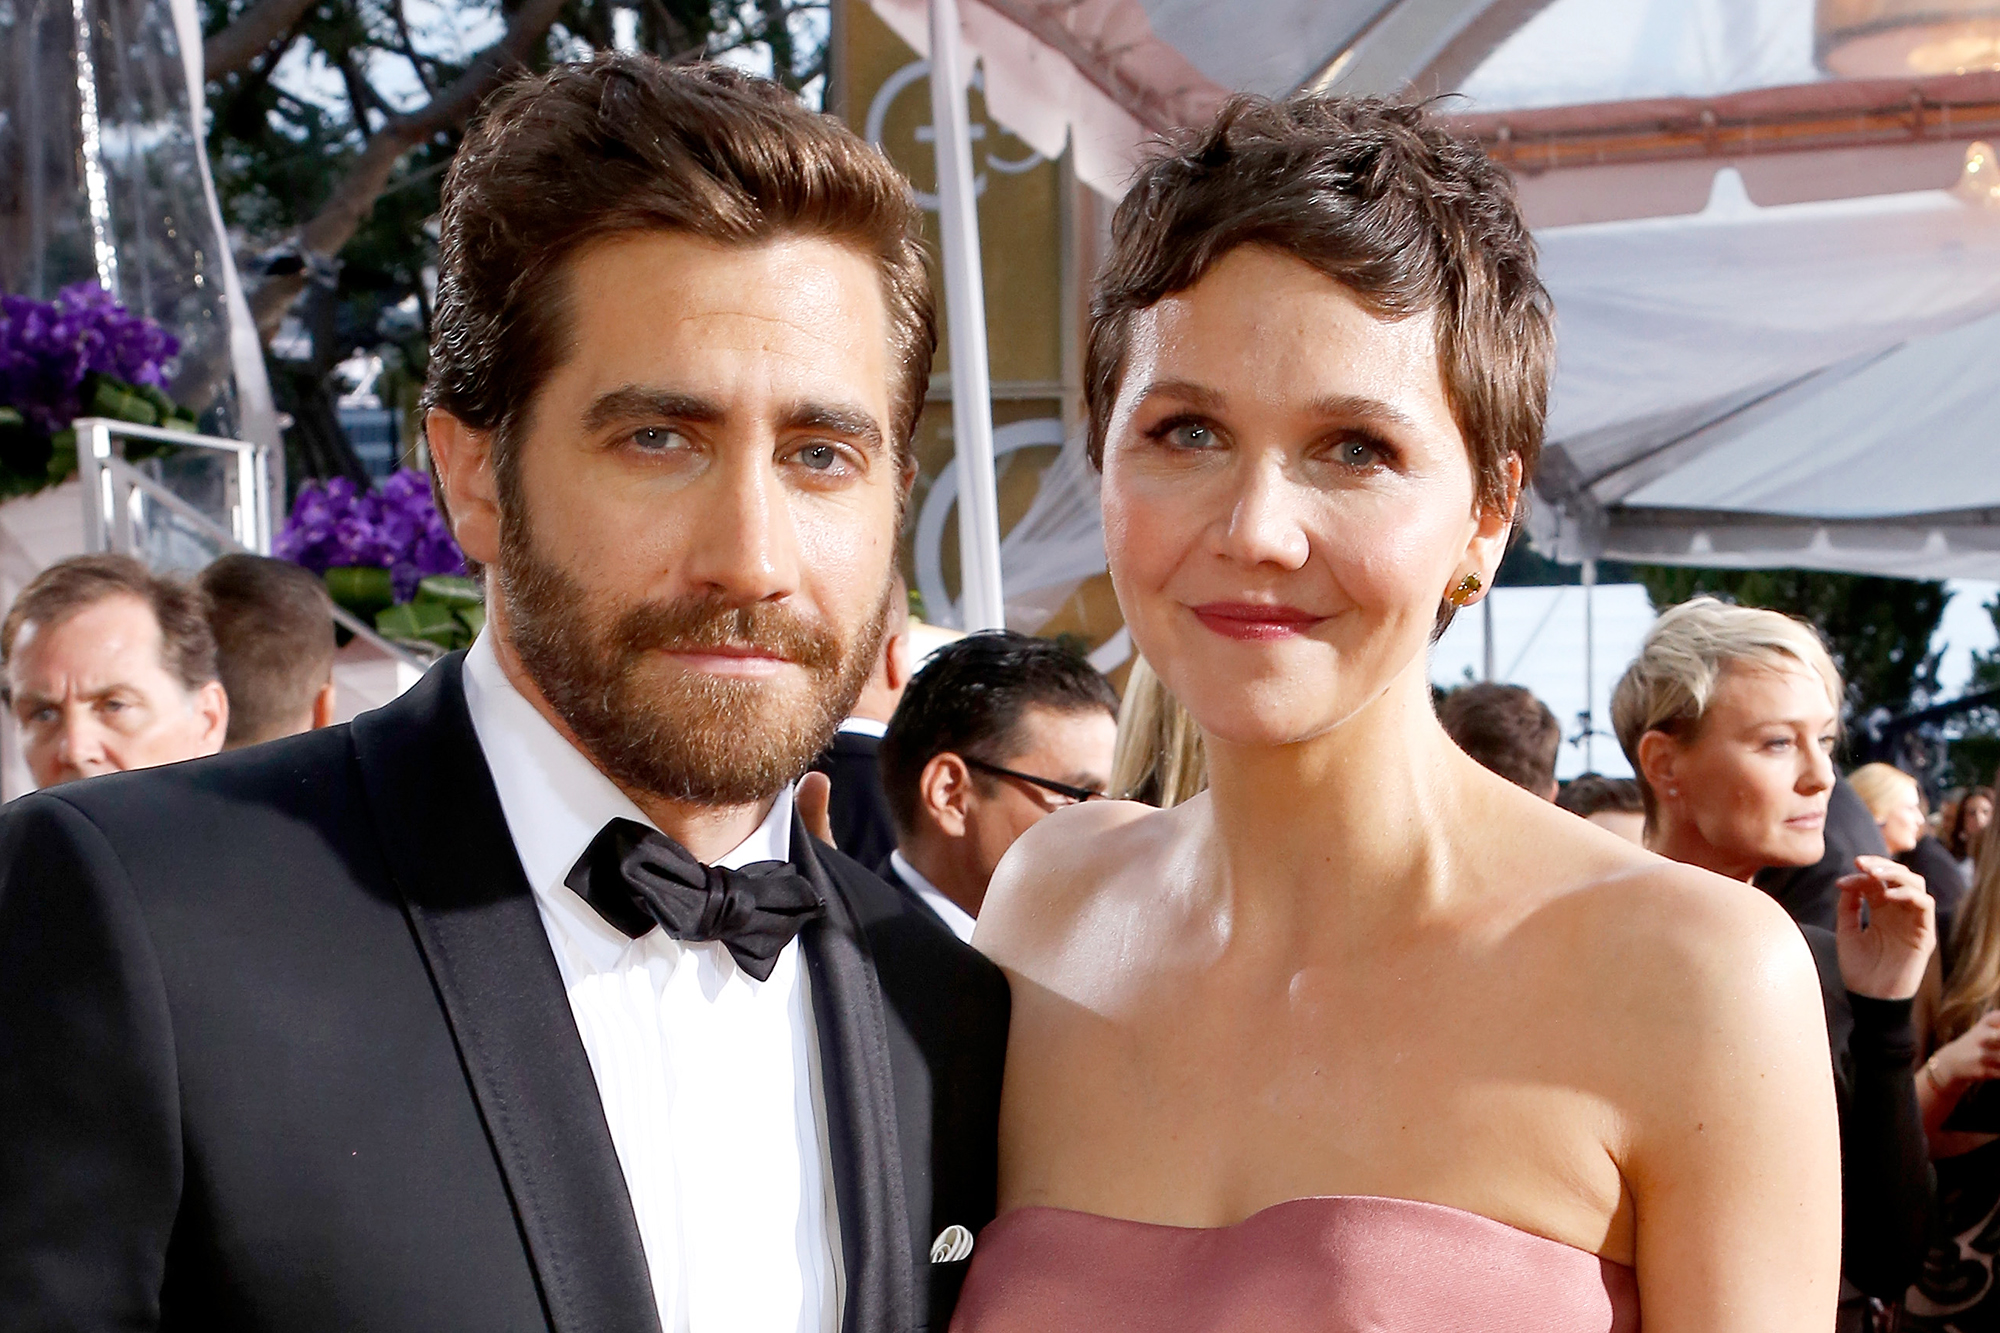 Jake Gyllenhaal and Maggie Gyllenhaal